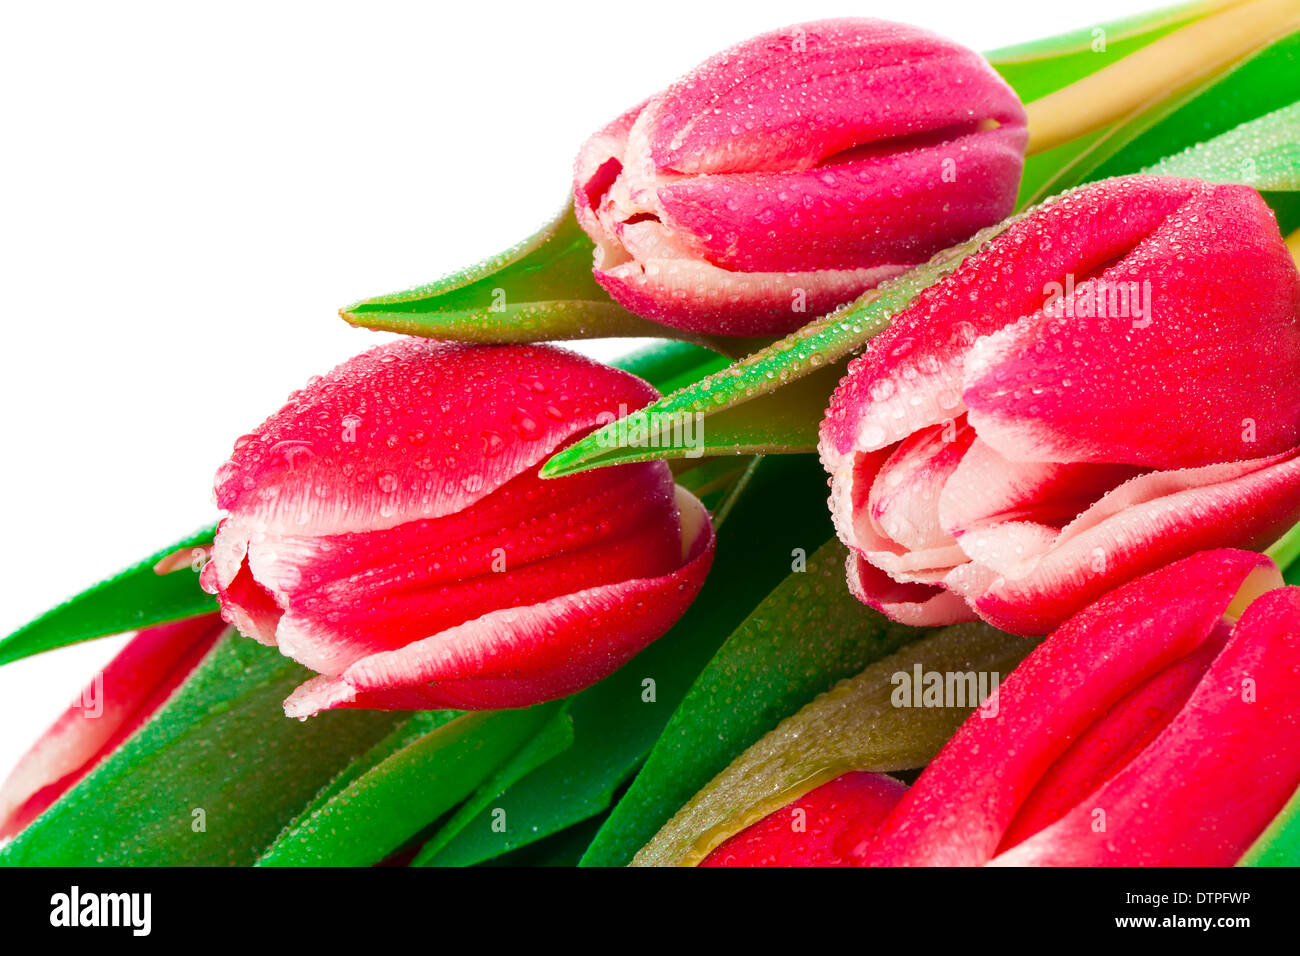 Hoa tulip màu hồng: Những đóa hoa tulip màu hồng đang chờ đợi bạn chỉnh sửa ngay trong ảnh của chúng tôi. Bạn sẽ không thể rời mắt khỏi sắc hồng tươi đẹp và xúc cảm tinh tế mà chúng ta không thể bỏ qua. Thưởng thức đẹp của hoa tulip màu hồng với hình ảnh đầy tinh tế và độc đáo!